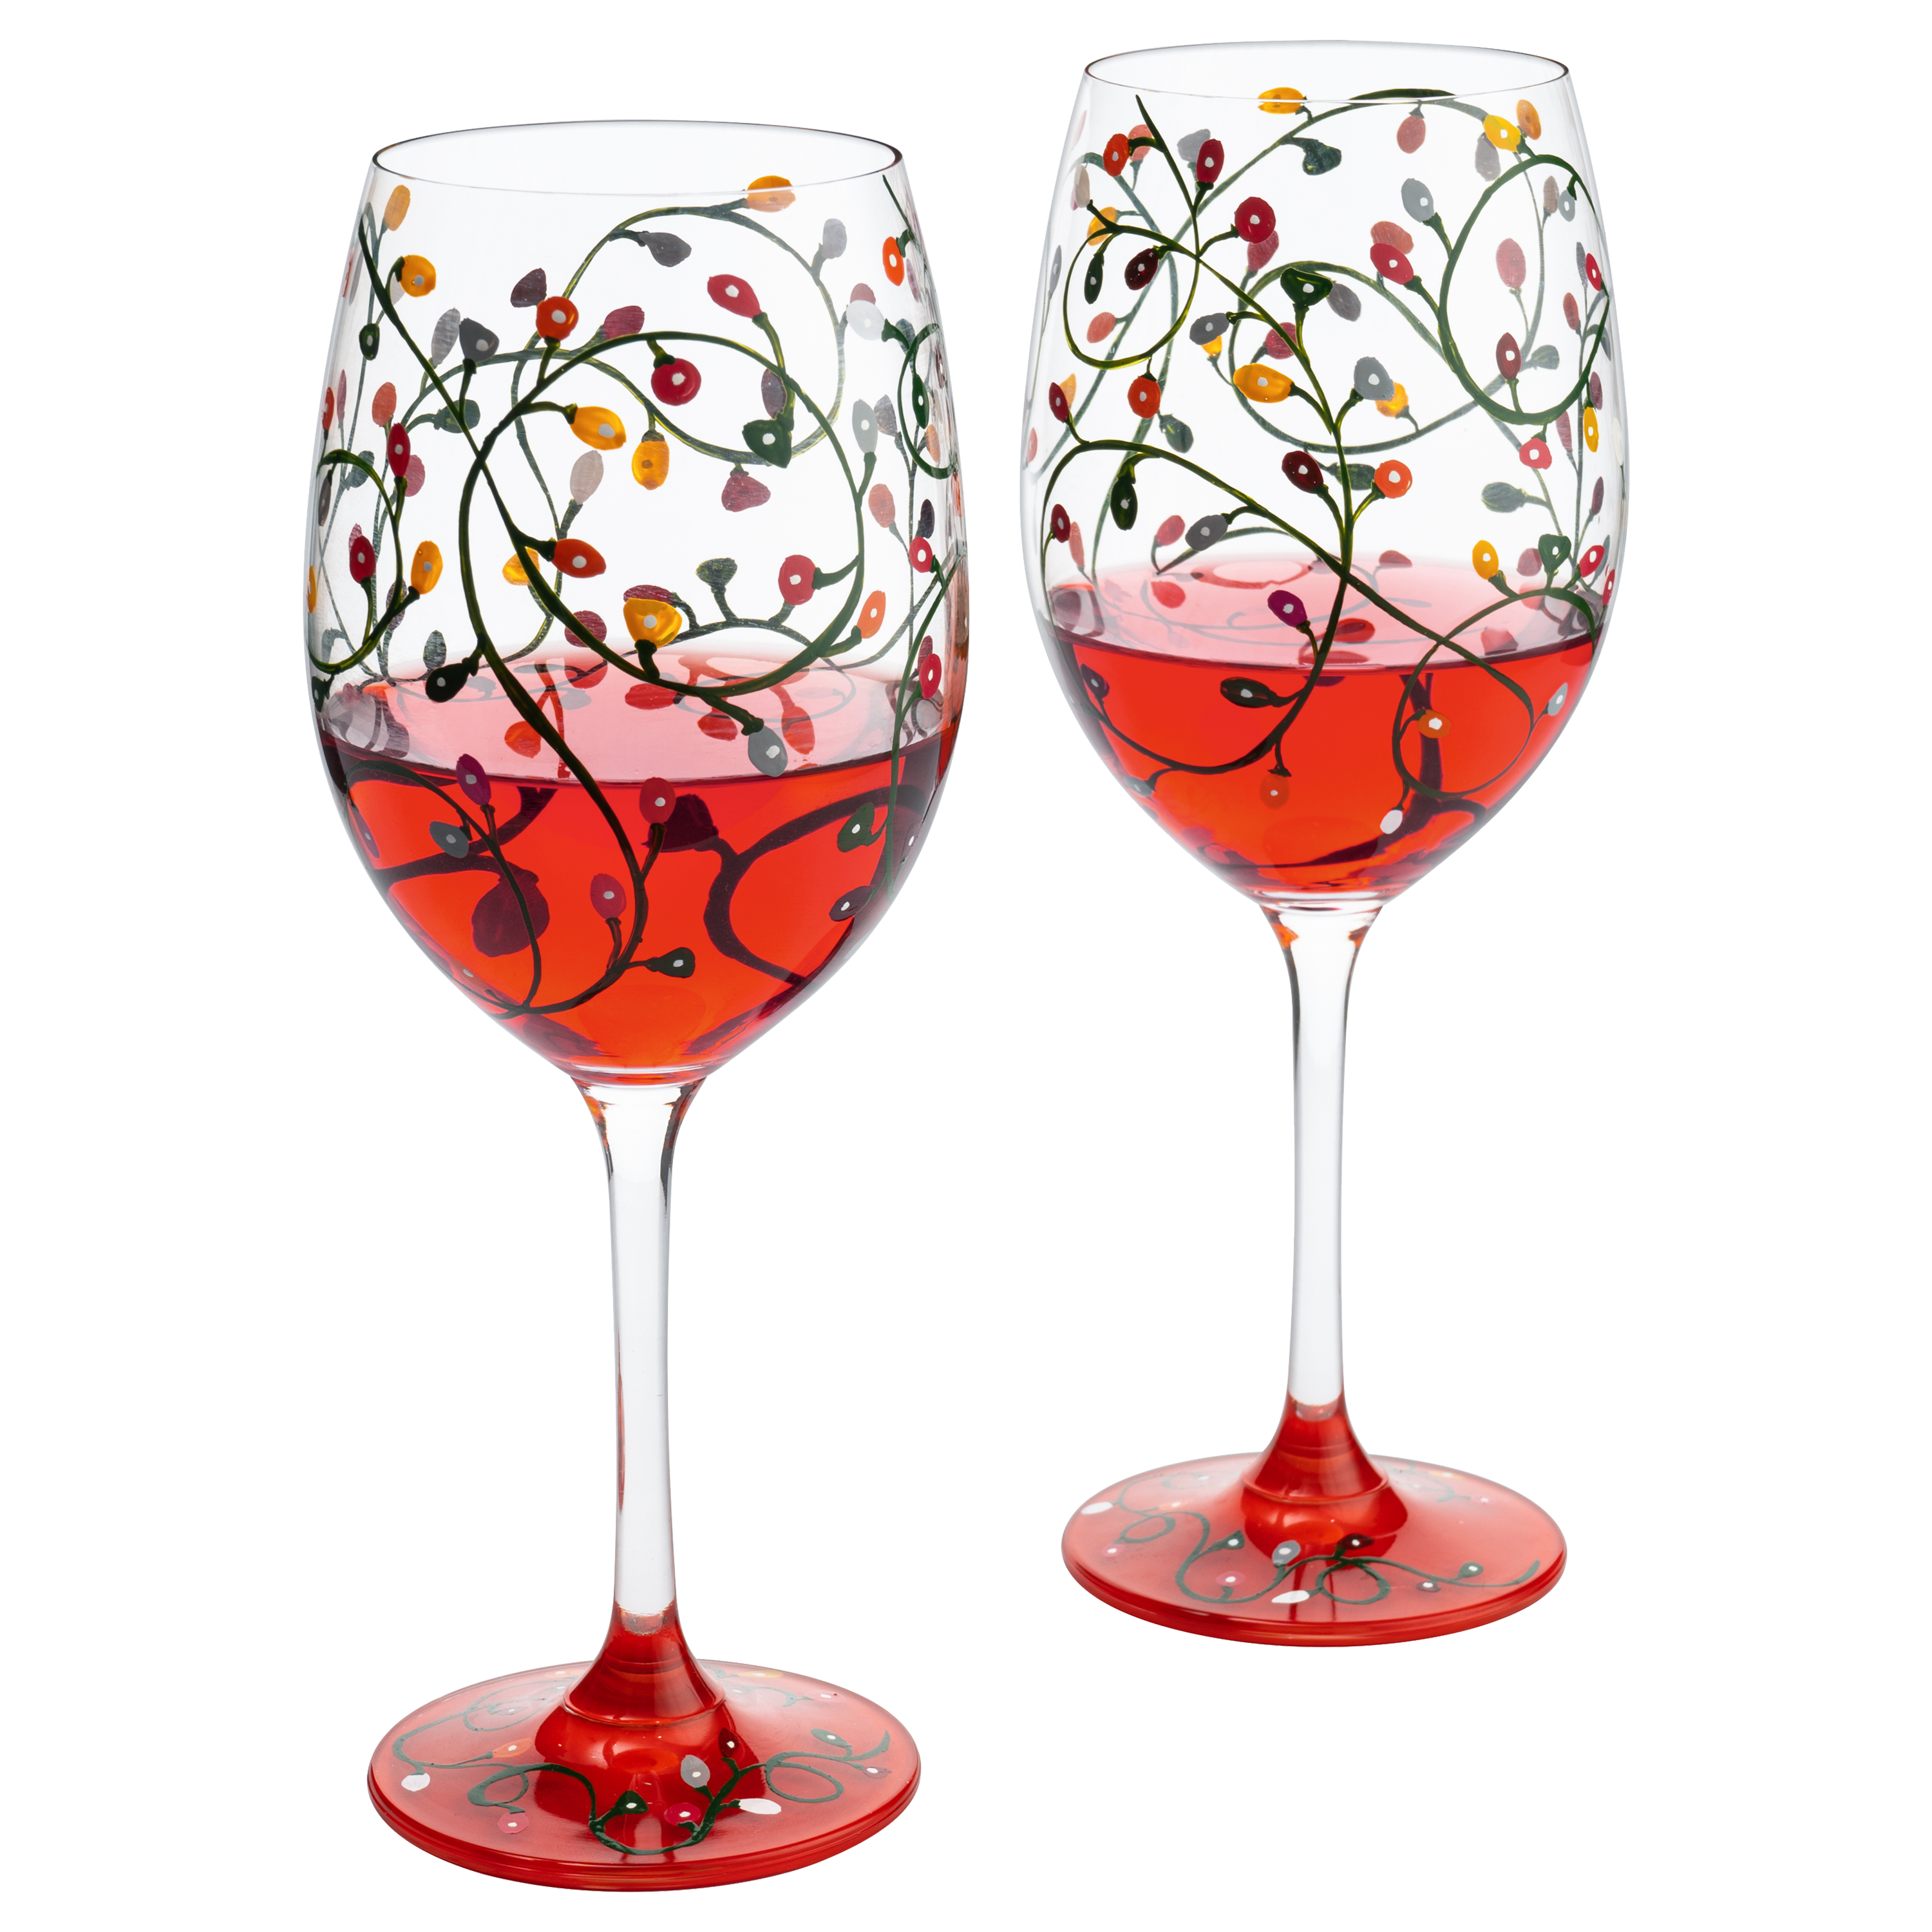 Stemmed Christmas Lights Wine Glasses Set of 2 - Hand Painted Wine Gla –  The Wine Savant